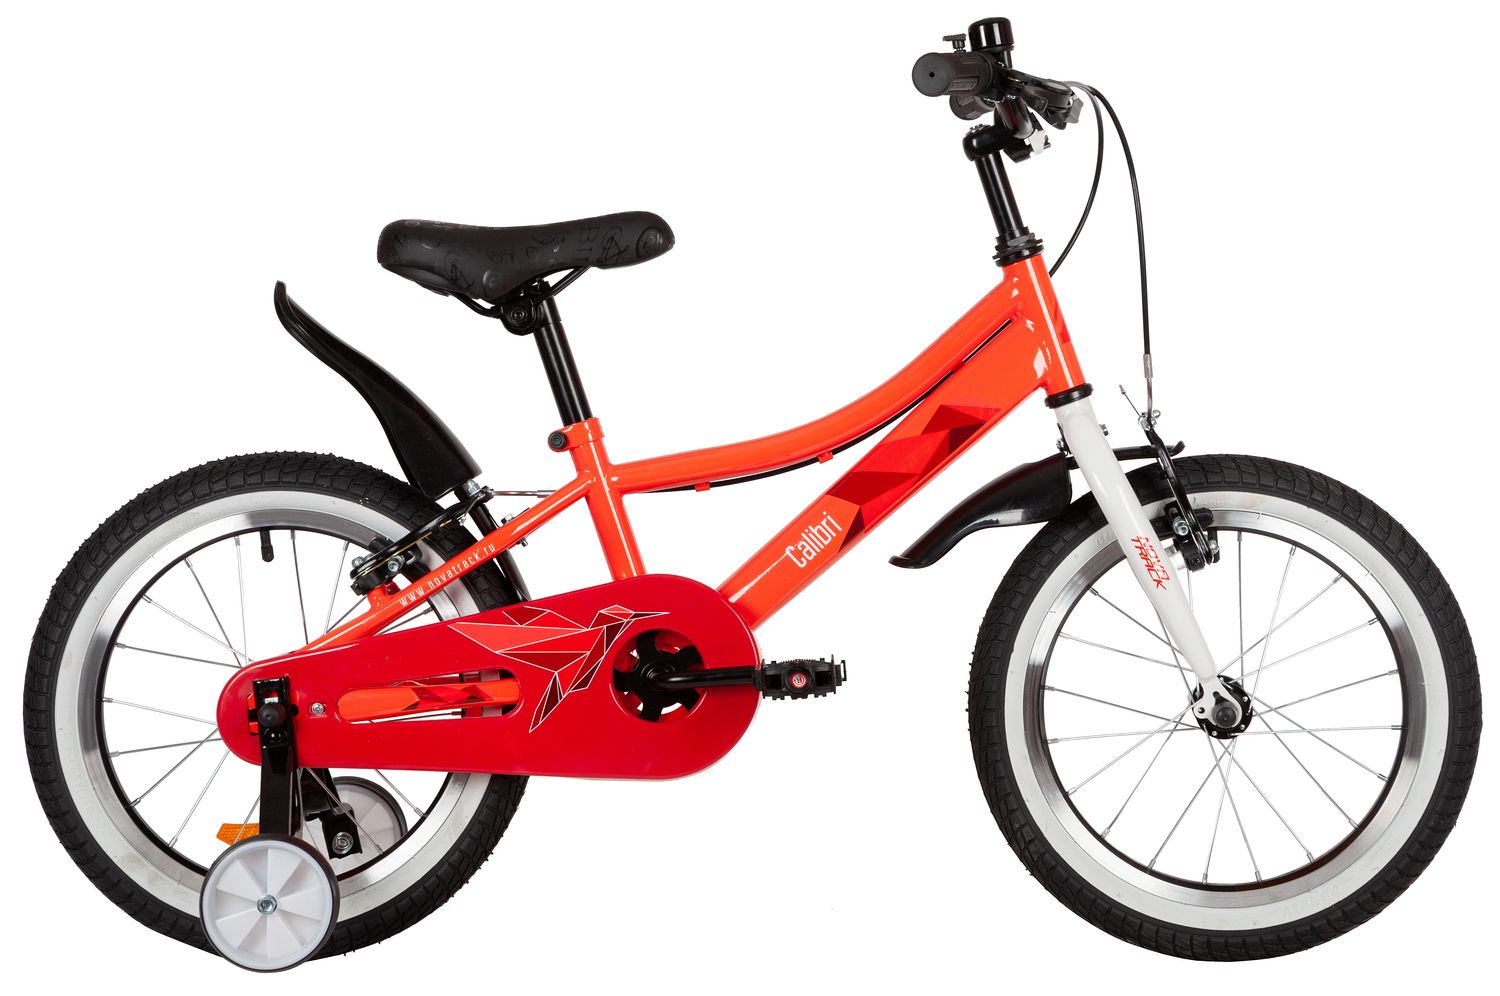  Отзывы о Детском велосипеде Novatrack Calibri 16 2022